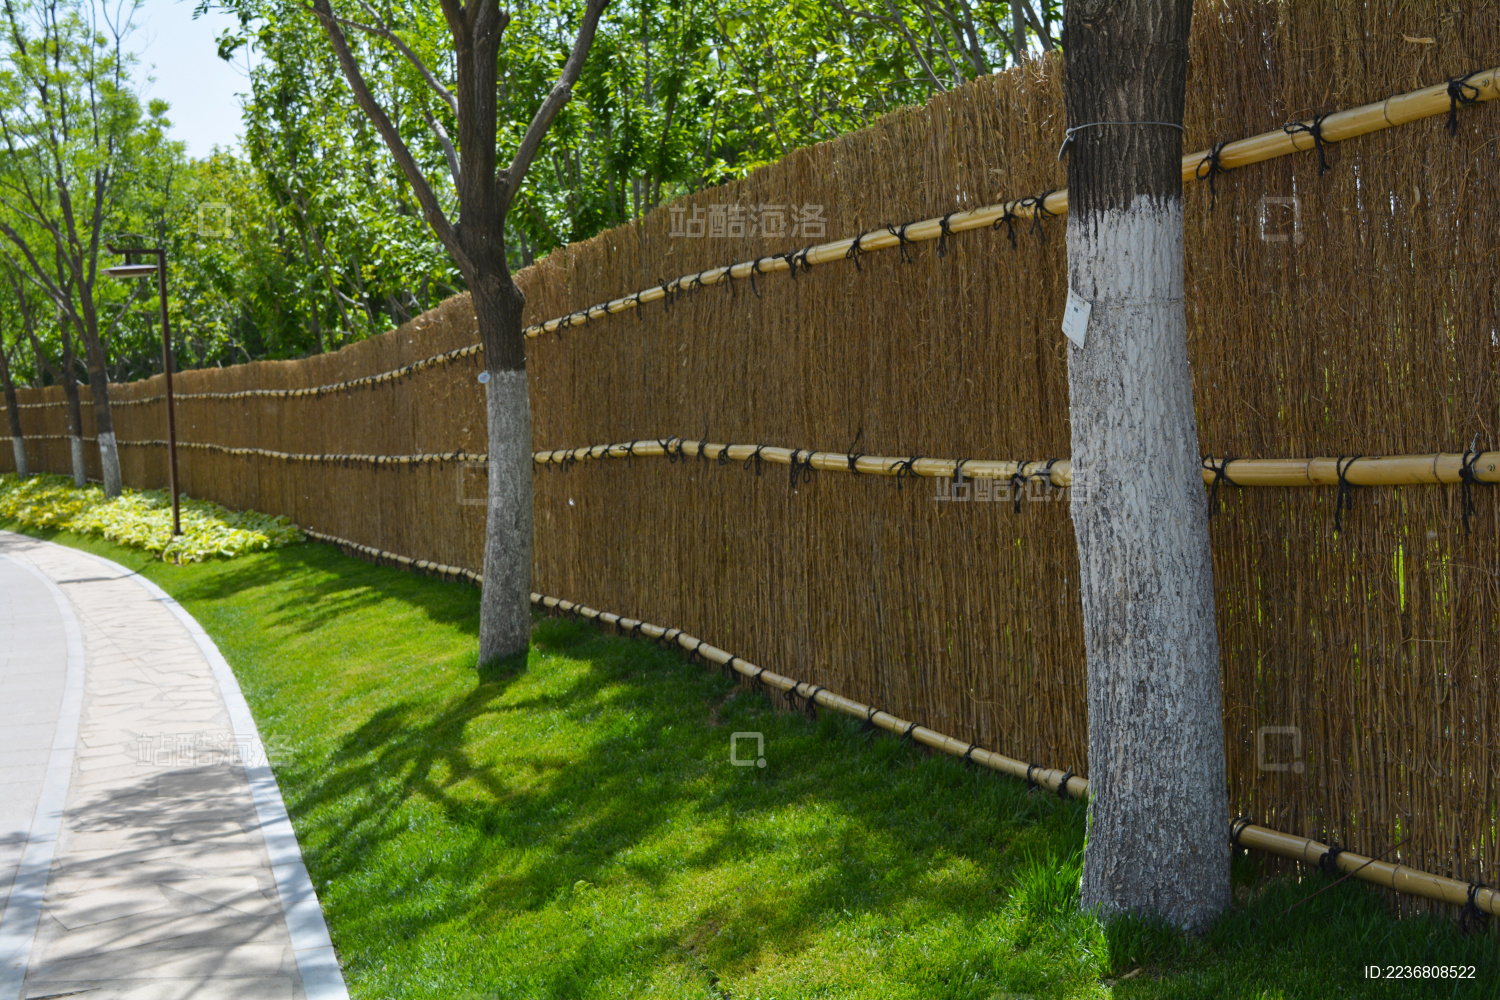 厂家直销花园竹篱笆围栏白竹网格篱笆竹爬藤网竹园林护栏小区围栏-阿里巴巴